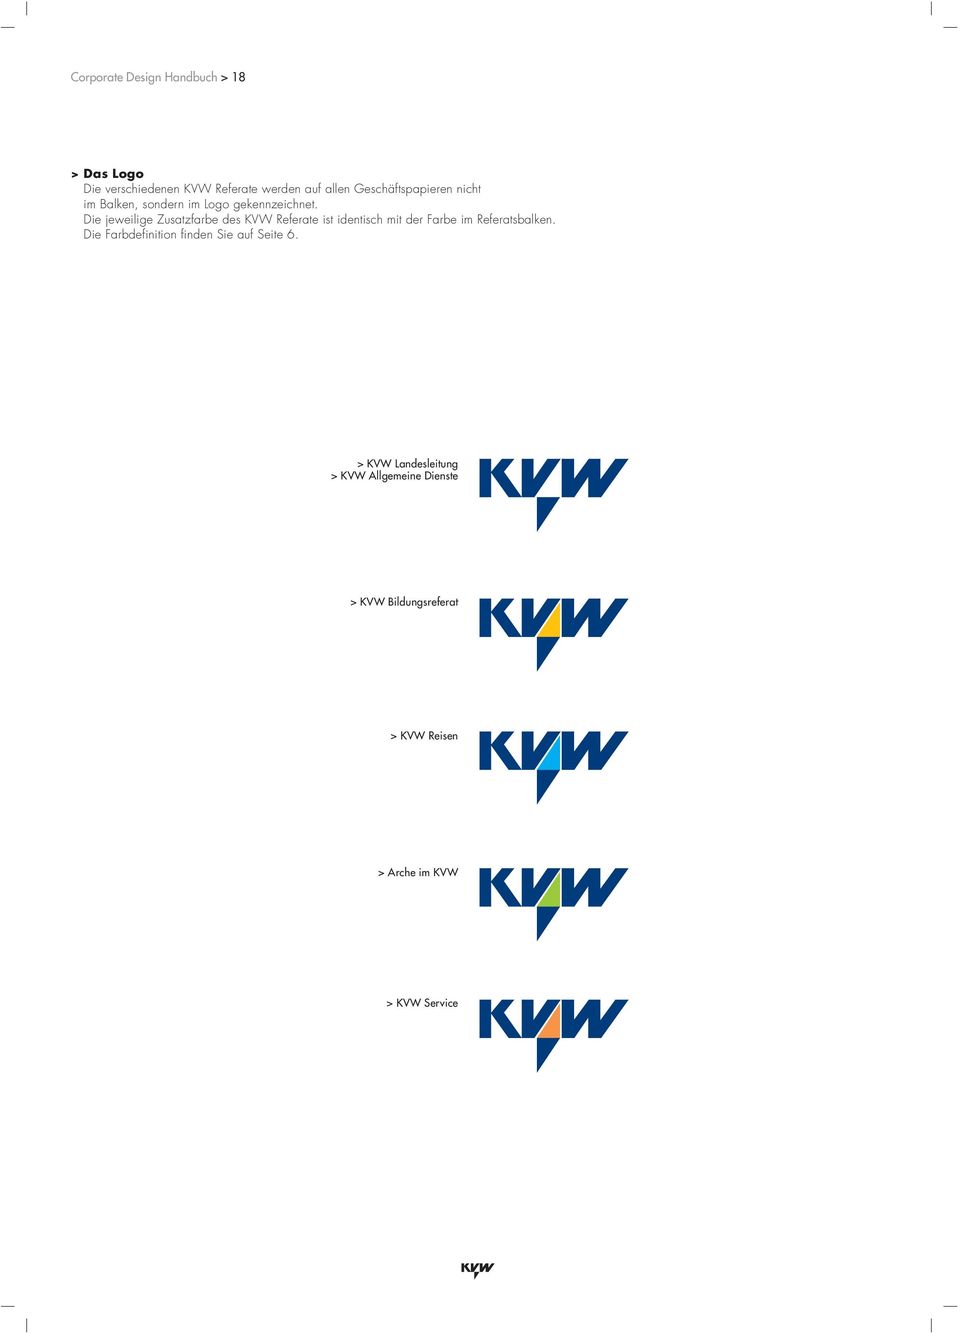 Die jeweilige Zusatzfarbe des KVW Referate ist identisch mit der Farbe im Referatsbalken.